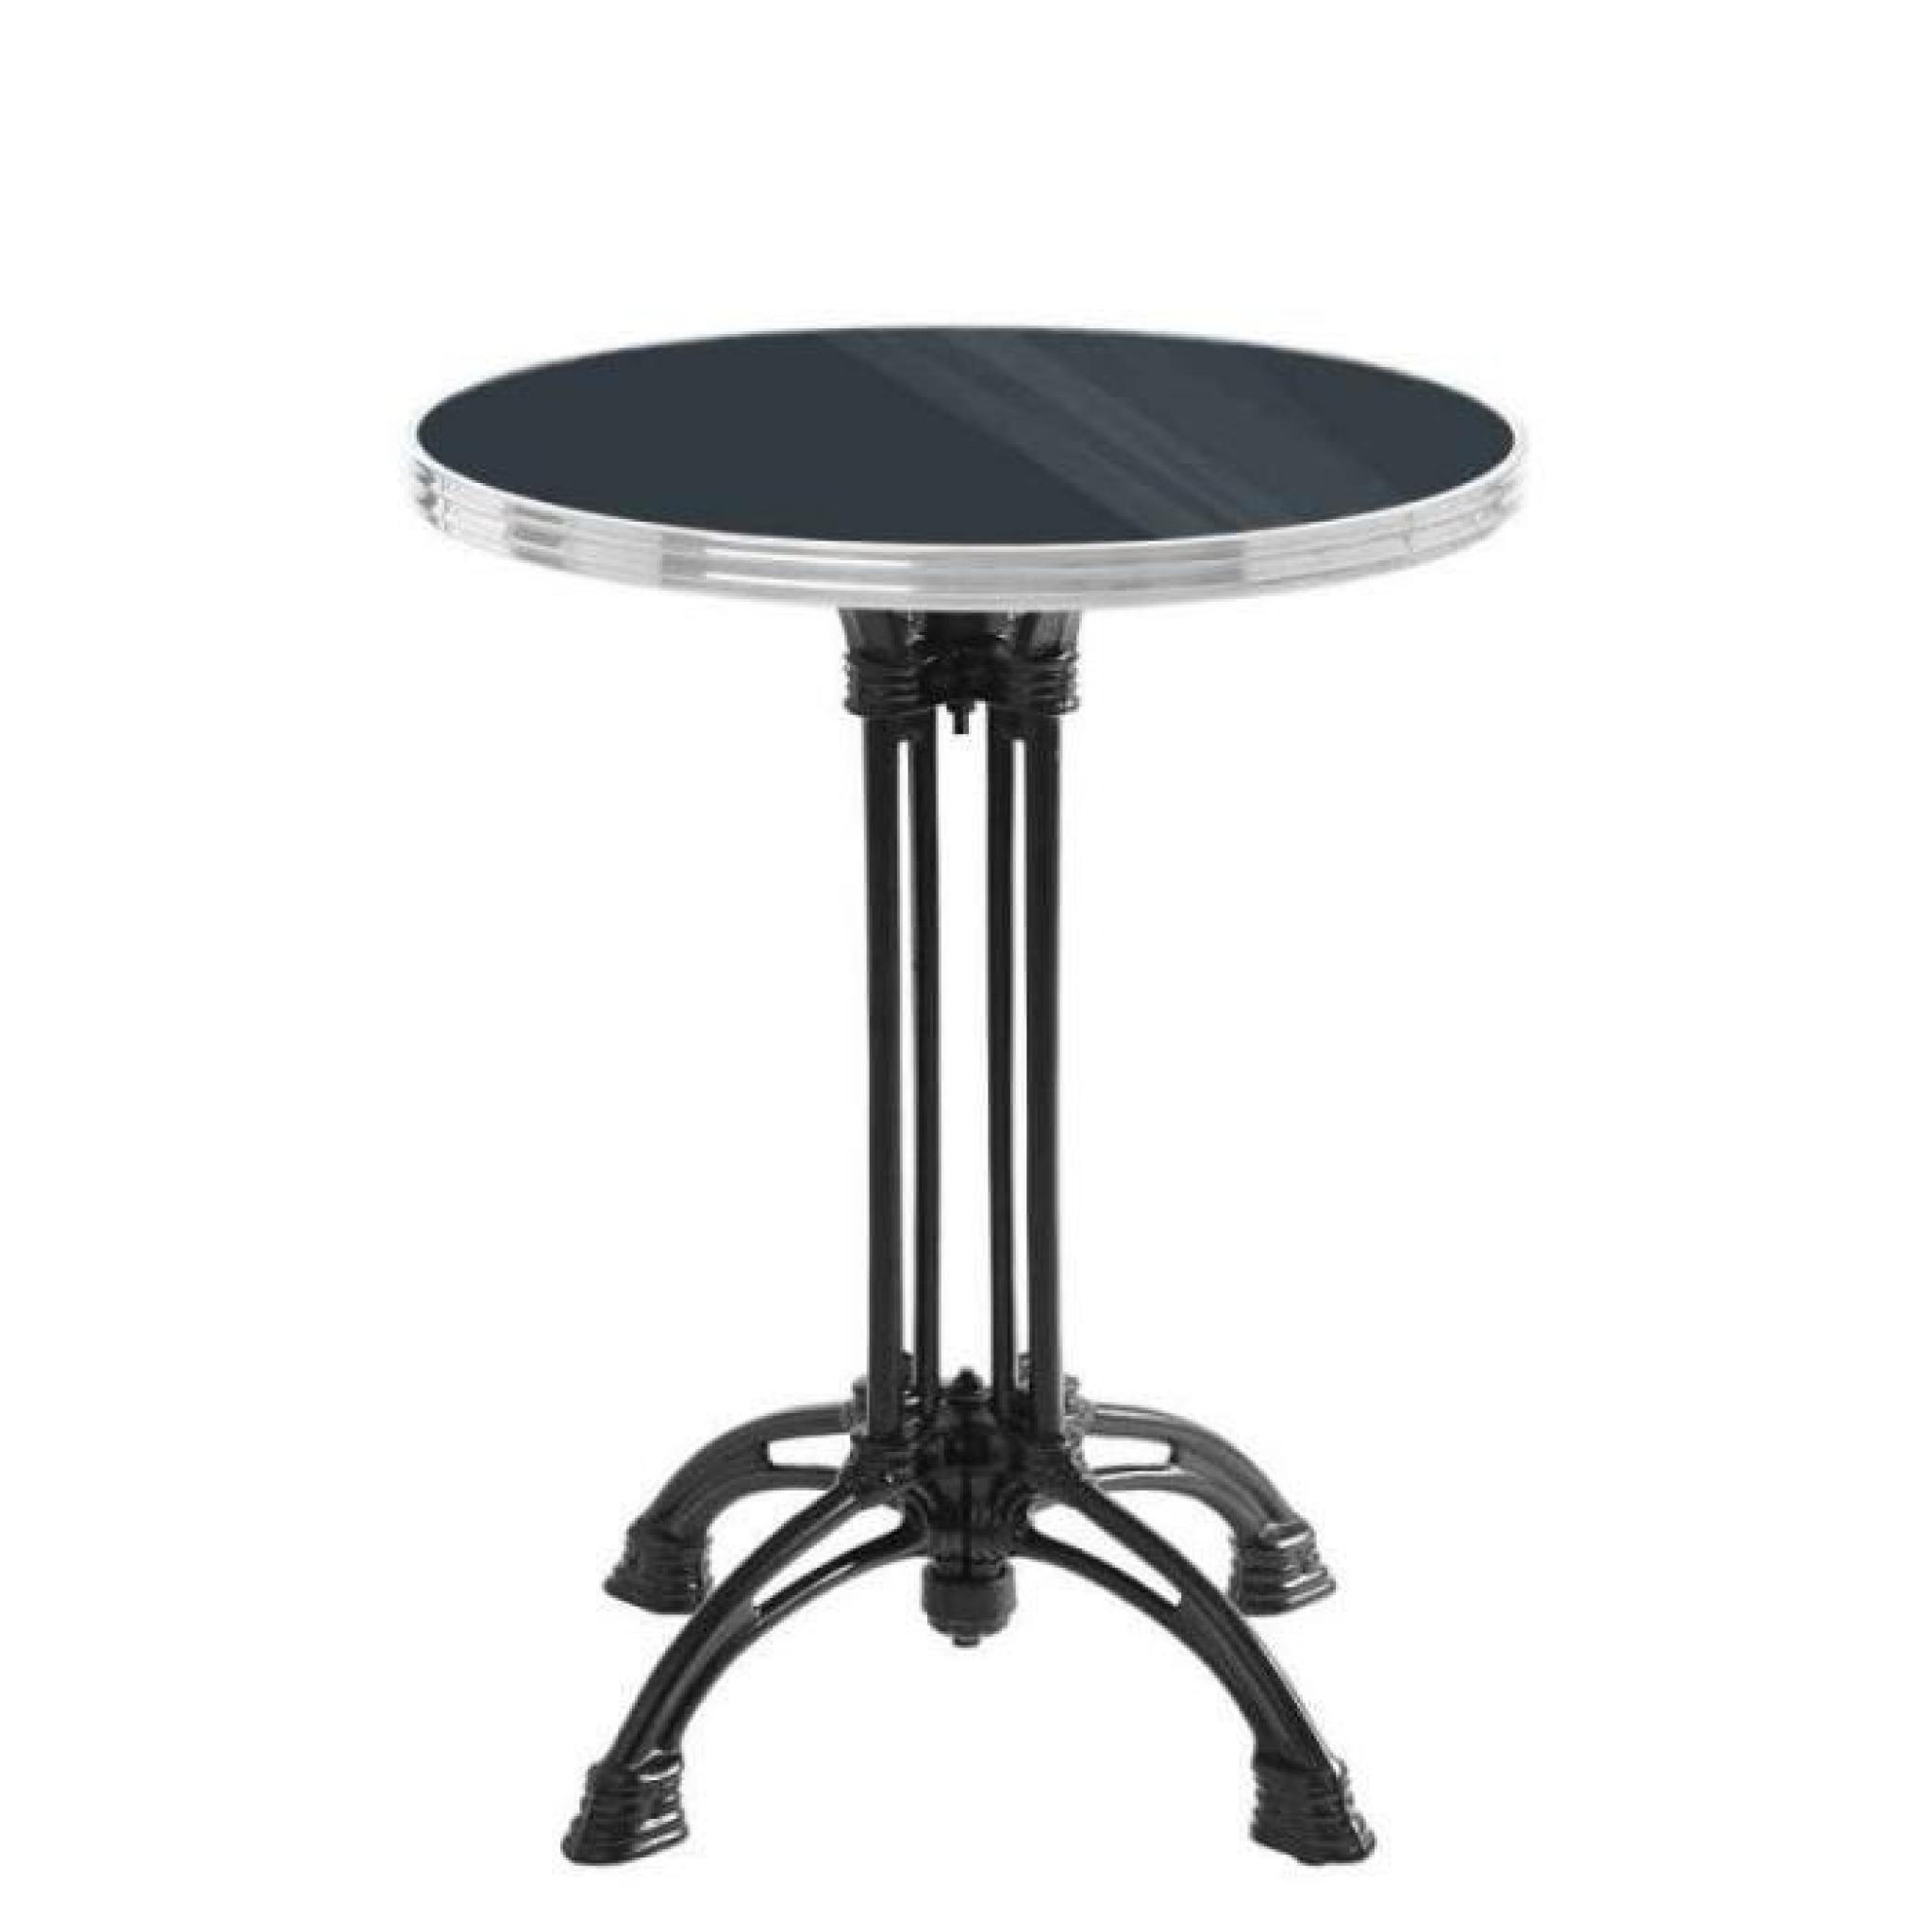 table bistrot ronde noir avec cerclage en inox - pied 4 branches - h70 x d50 cm pas cher